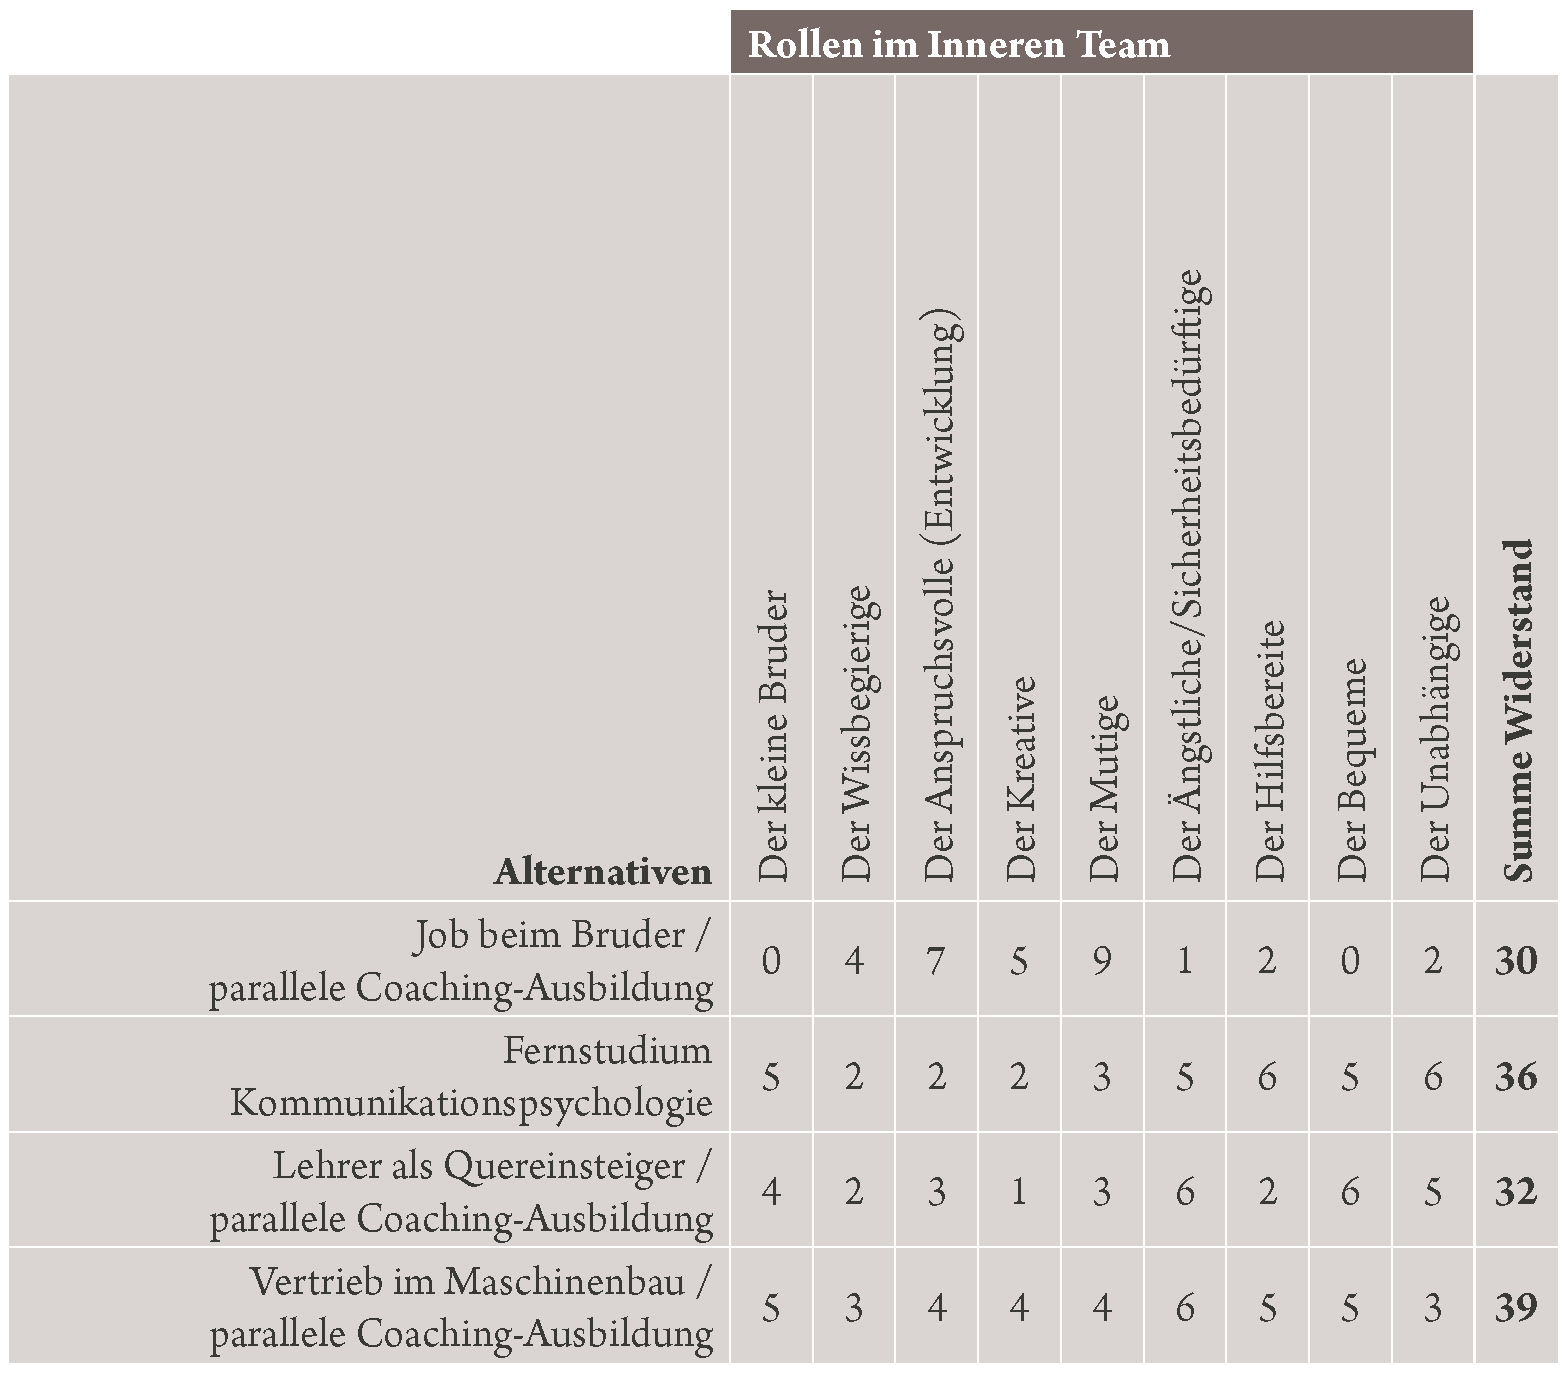 Systemisches Konsensieren mit dem Inneren Team im Karriere-Coaching